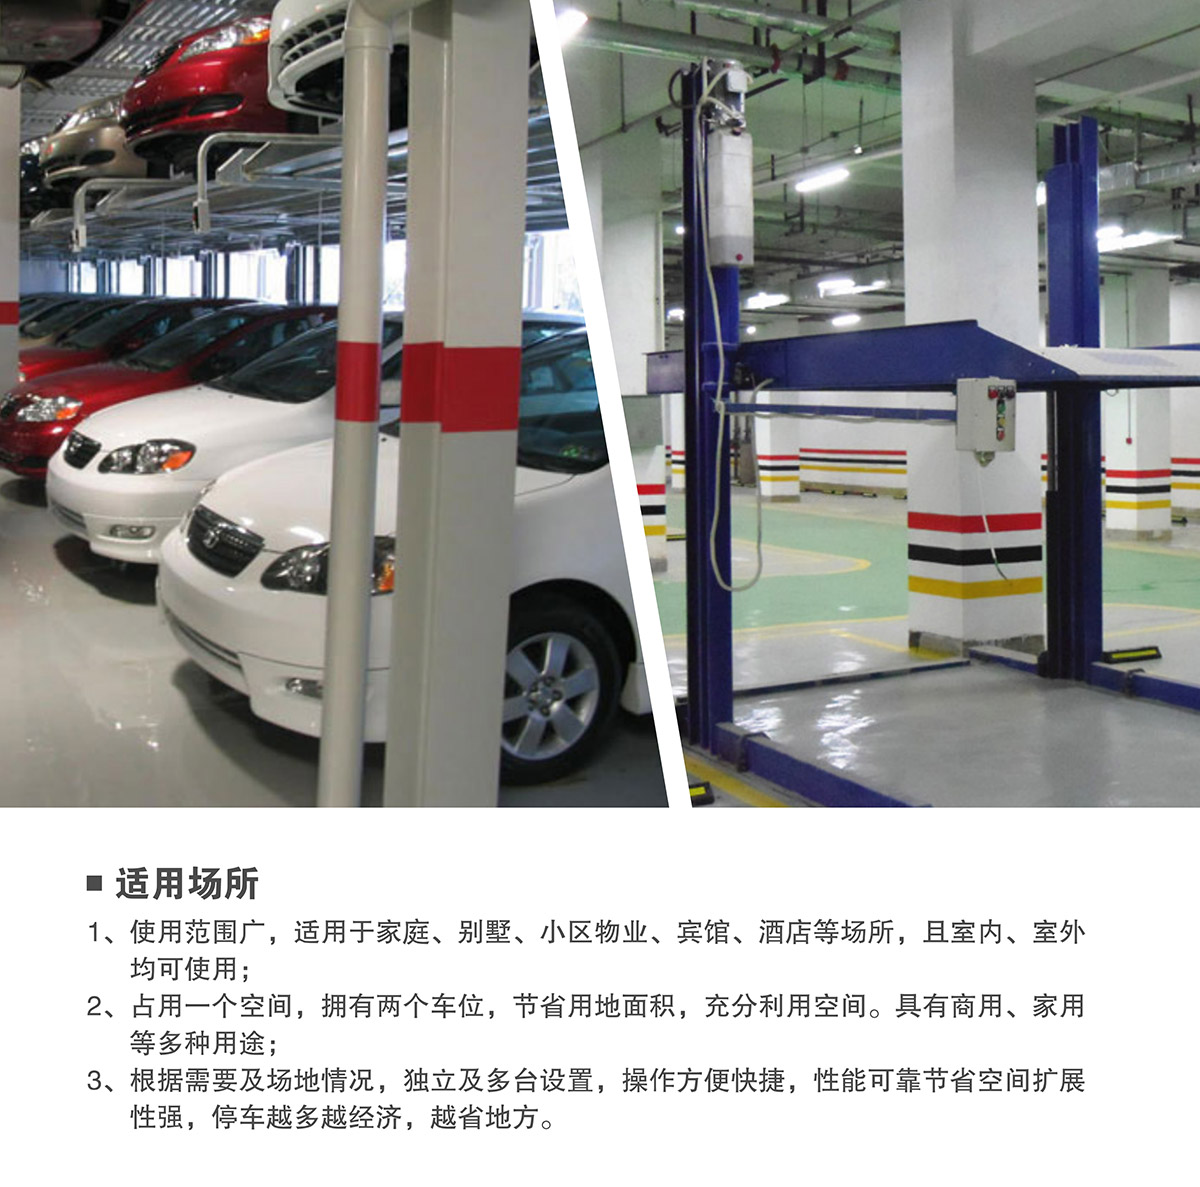 立体车位租赁两柱简易升降机械停车设备适用场所.jpg